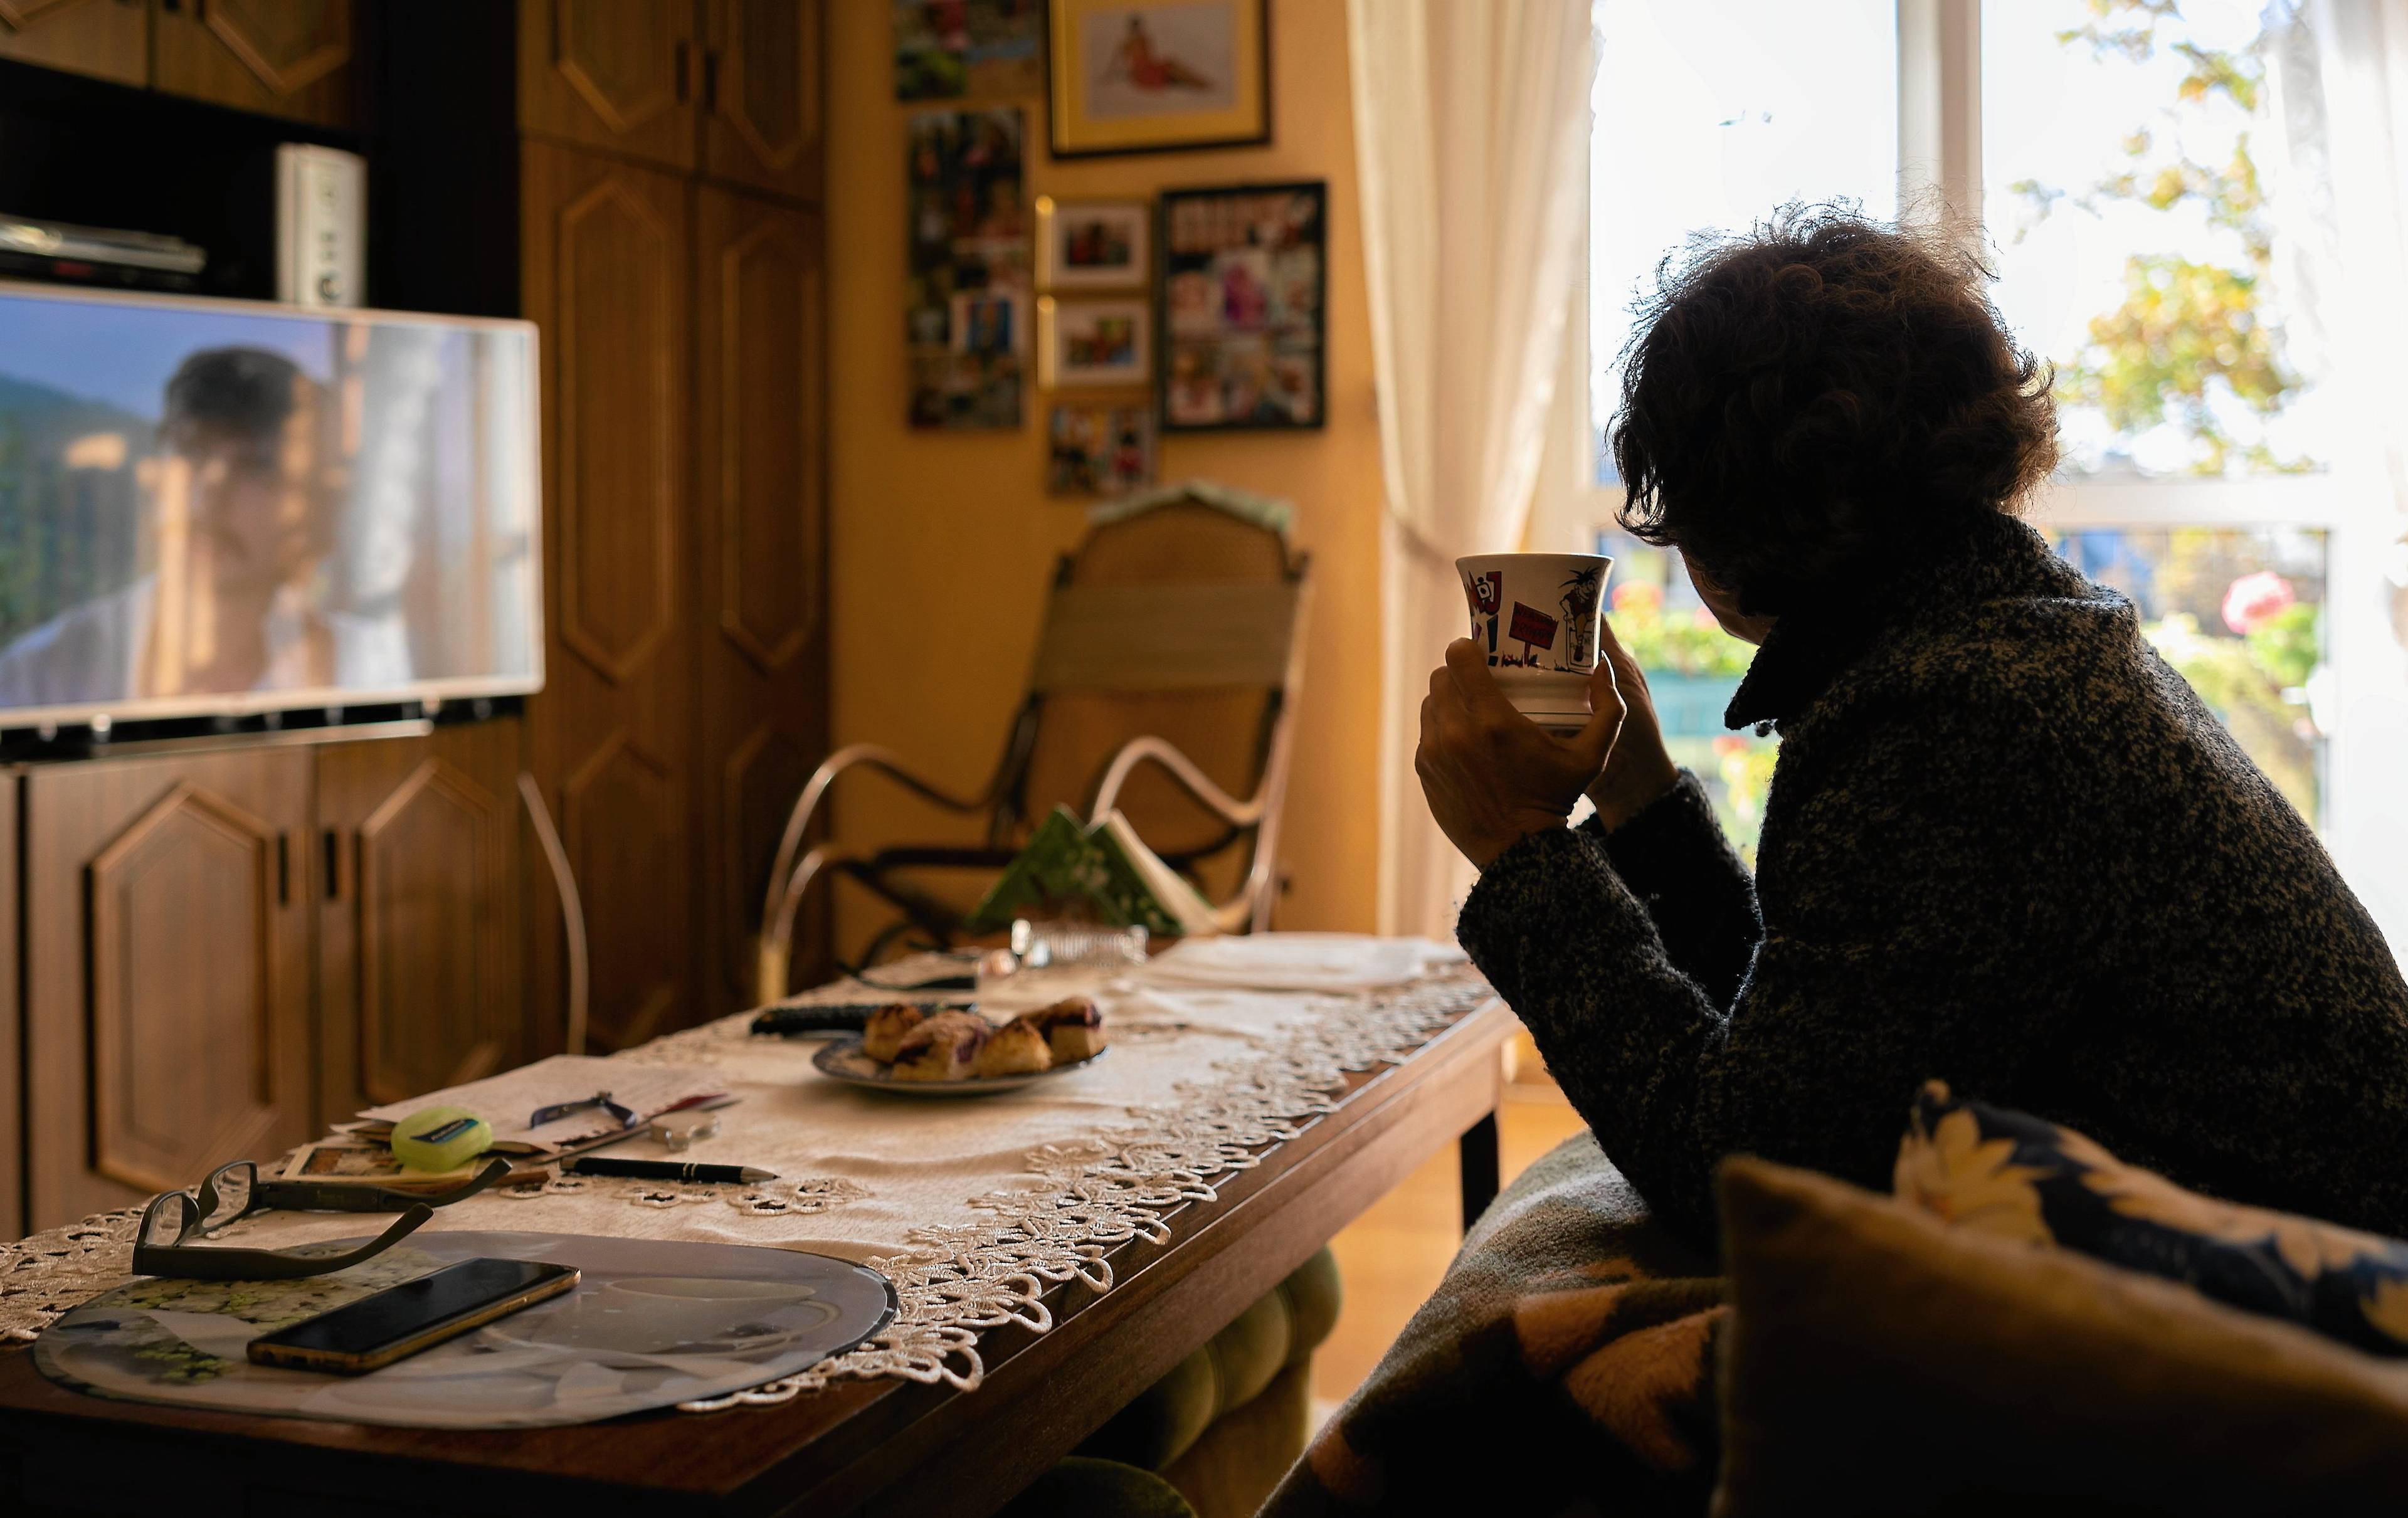 Kobieta siedzi na kanapie w mieszkaniu, jest przykryta kocem w dłoniach trzyma kubek z herbatą